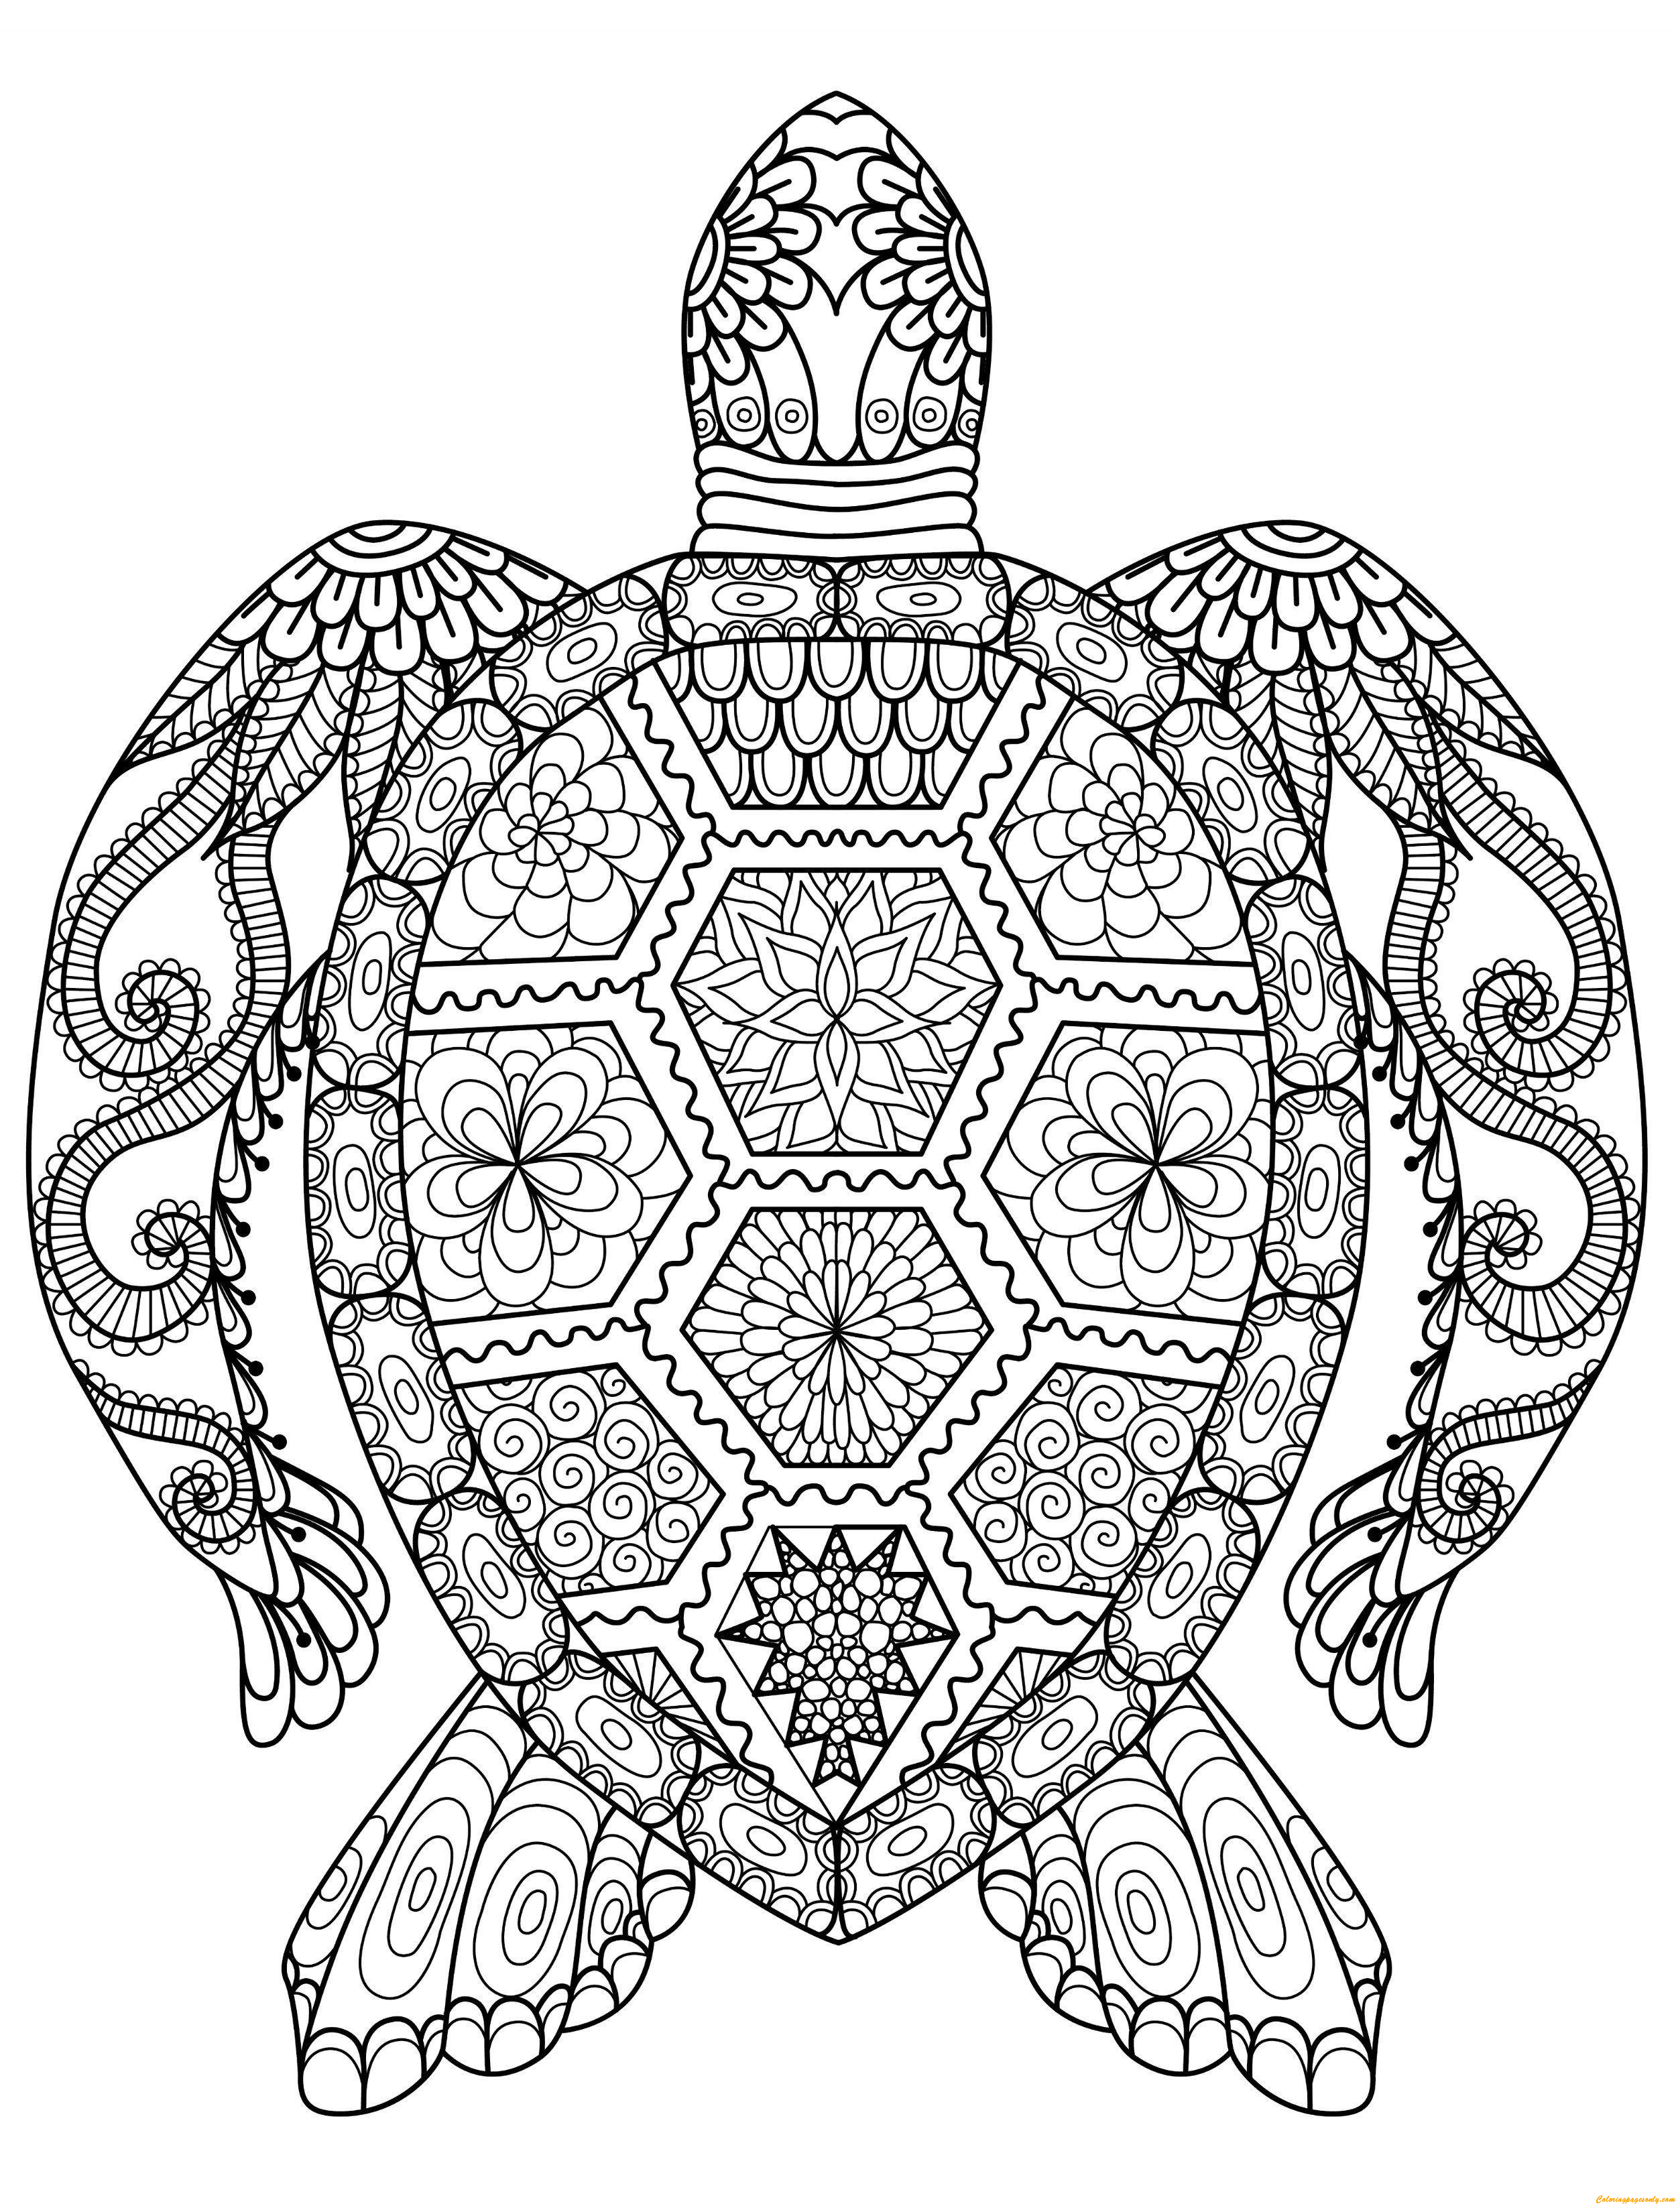 Página para colorear de tortuga decorativa